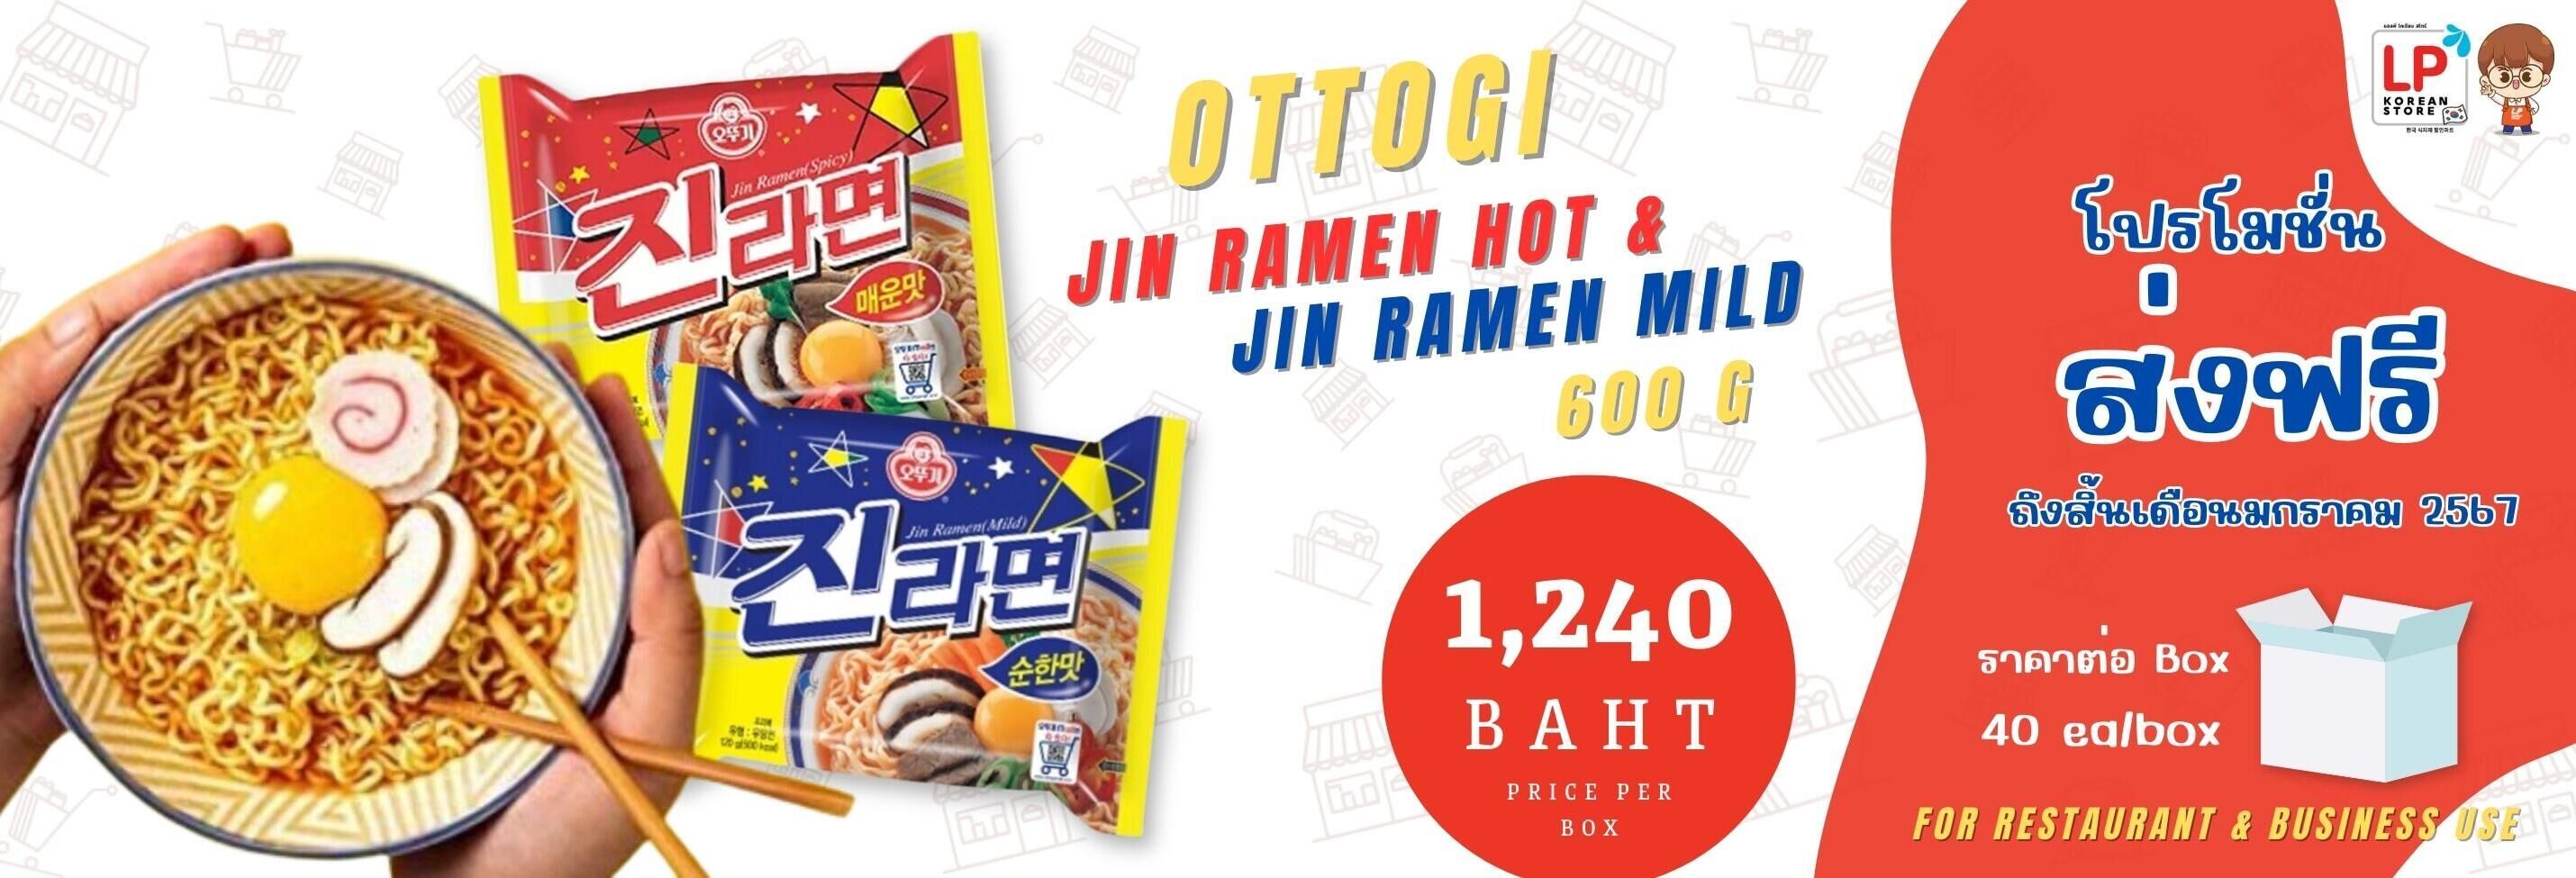 Ottogi Jin Ramen Hot & Jin Ramen Mild